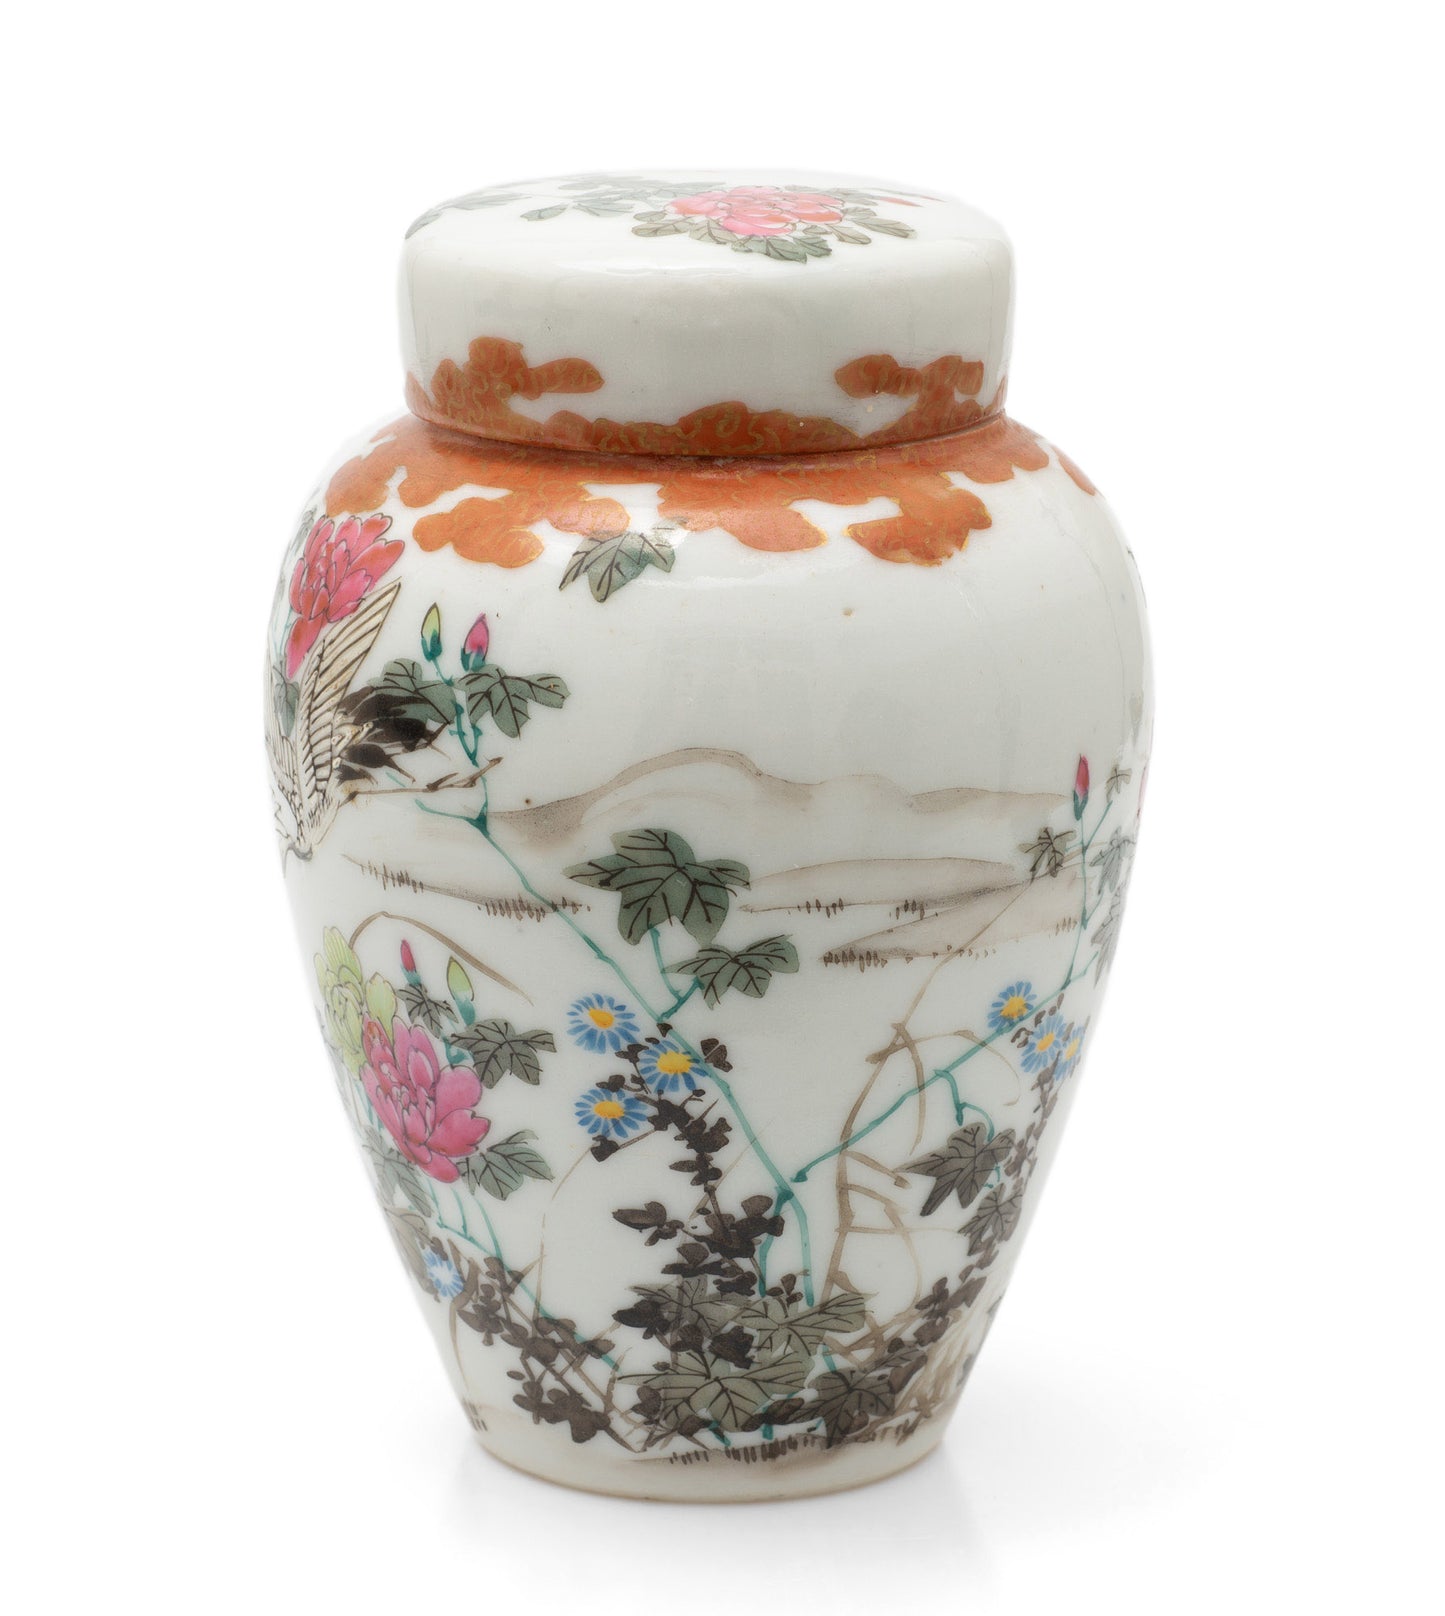 Antique Japanese Kutani Porcelain Flying Cranes Jar with Lid & Floral Designs (Code 2460)